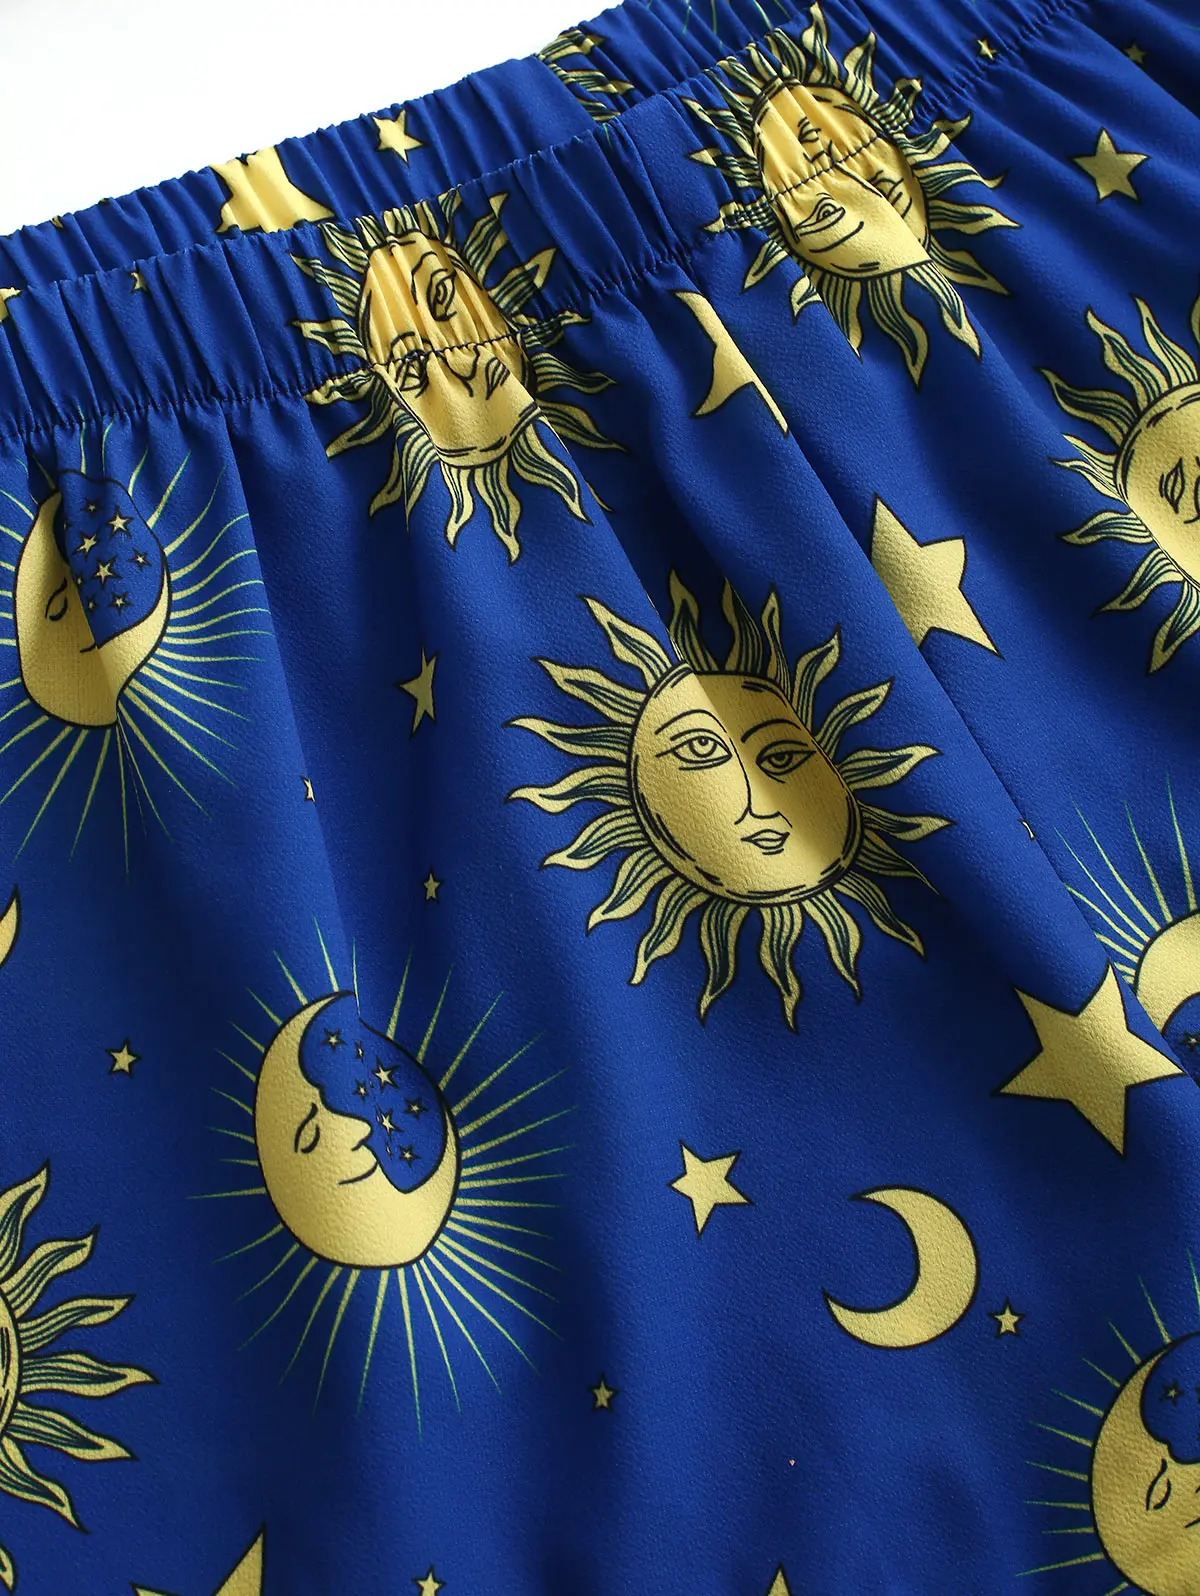 ZAFUL женские комплекты звезда, солнце и луна бандо топ и шорты Комплект без рукавов Эластичный Высокая талия летний костюм Модный комплект из двух предметов